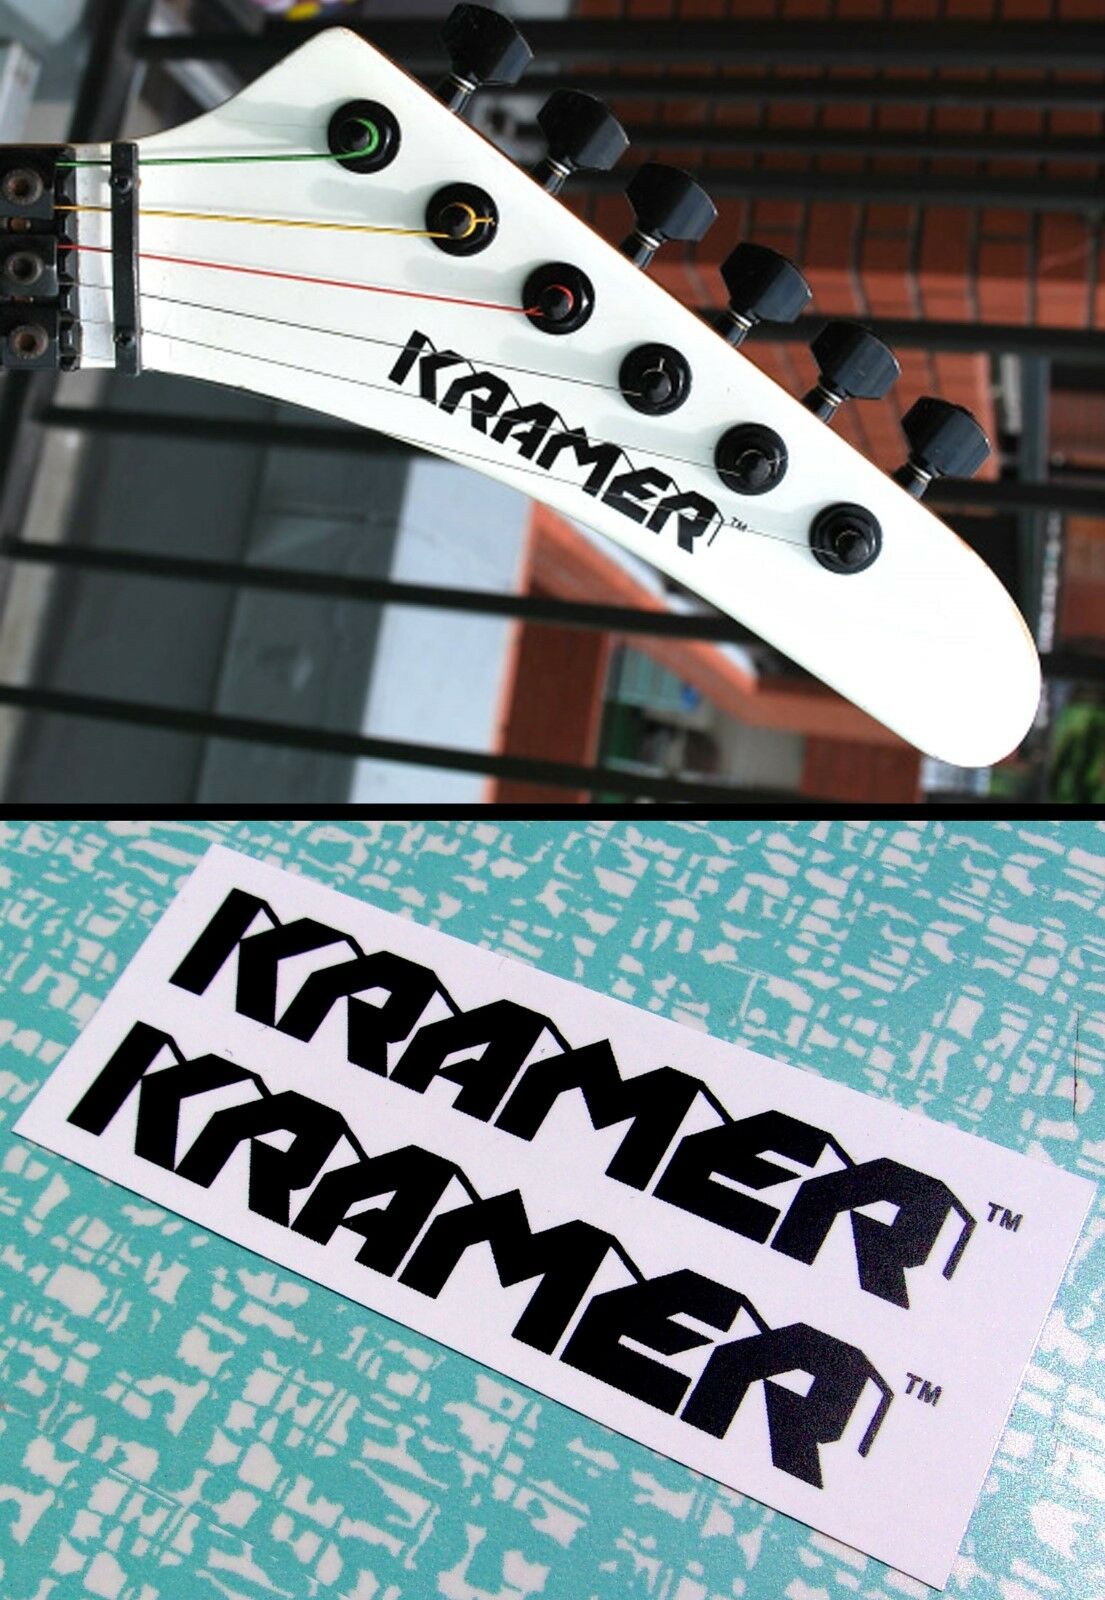 Kramer Strat Headstock Decal Waterslide Guitar Stratocaster Van Halen 1980's